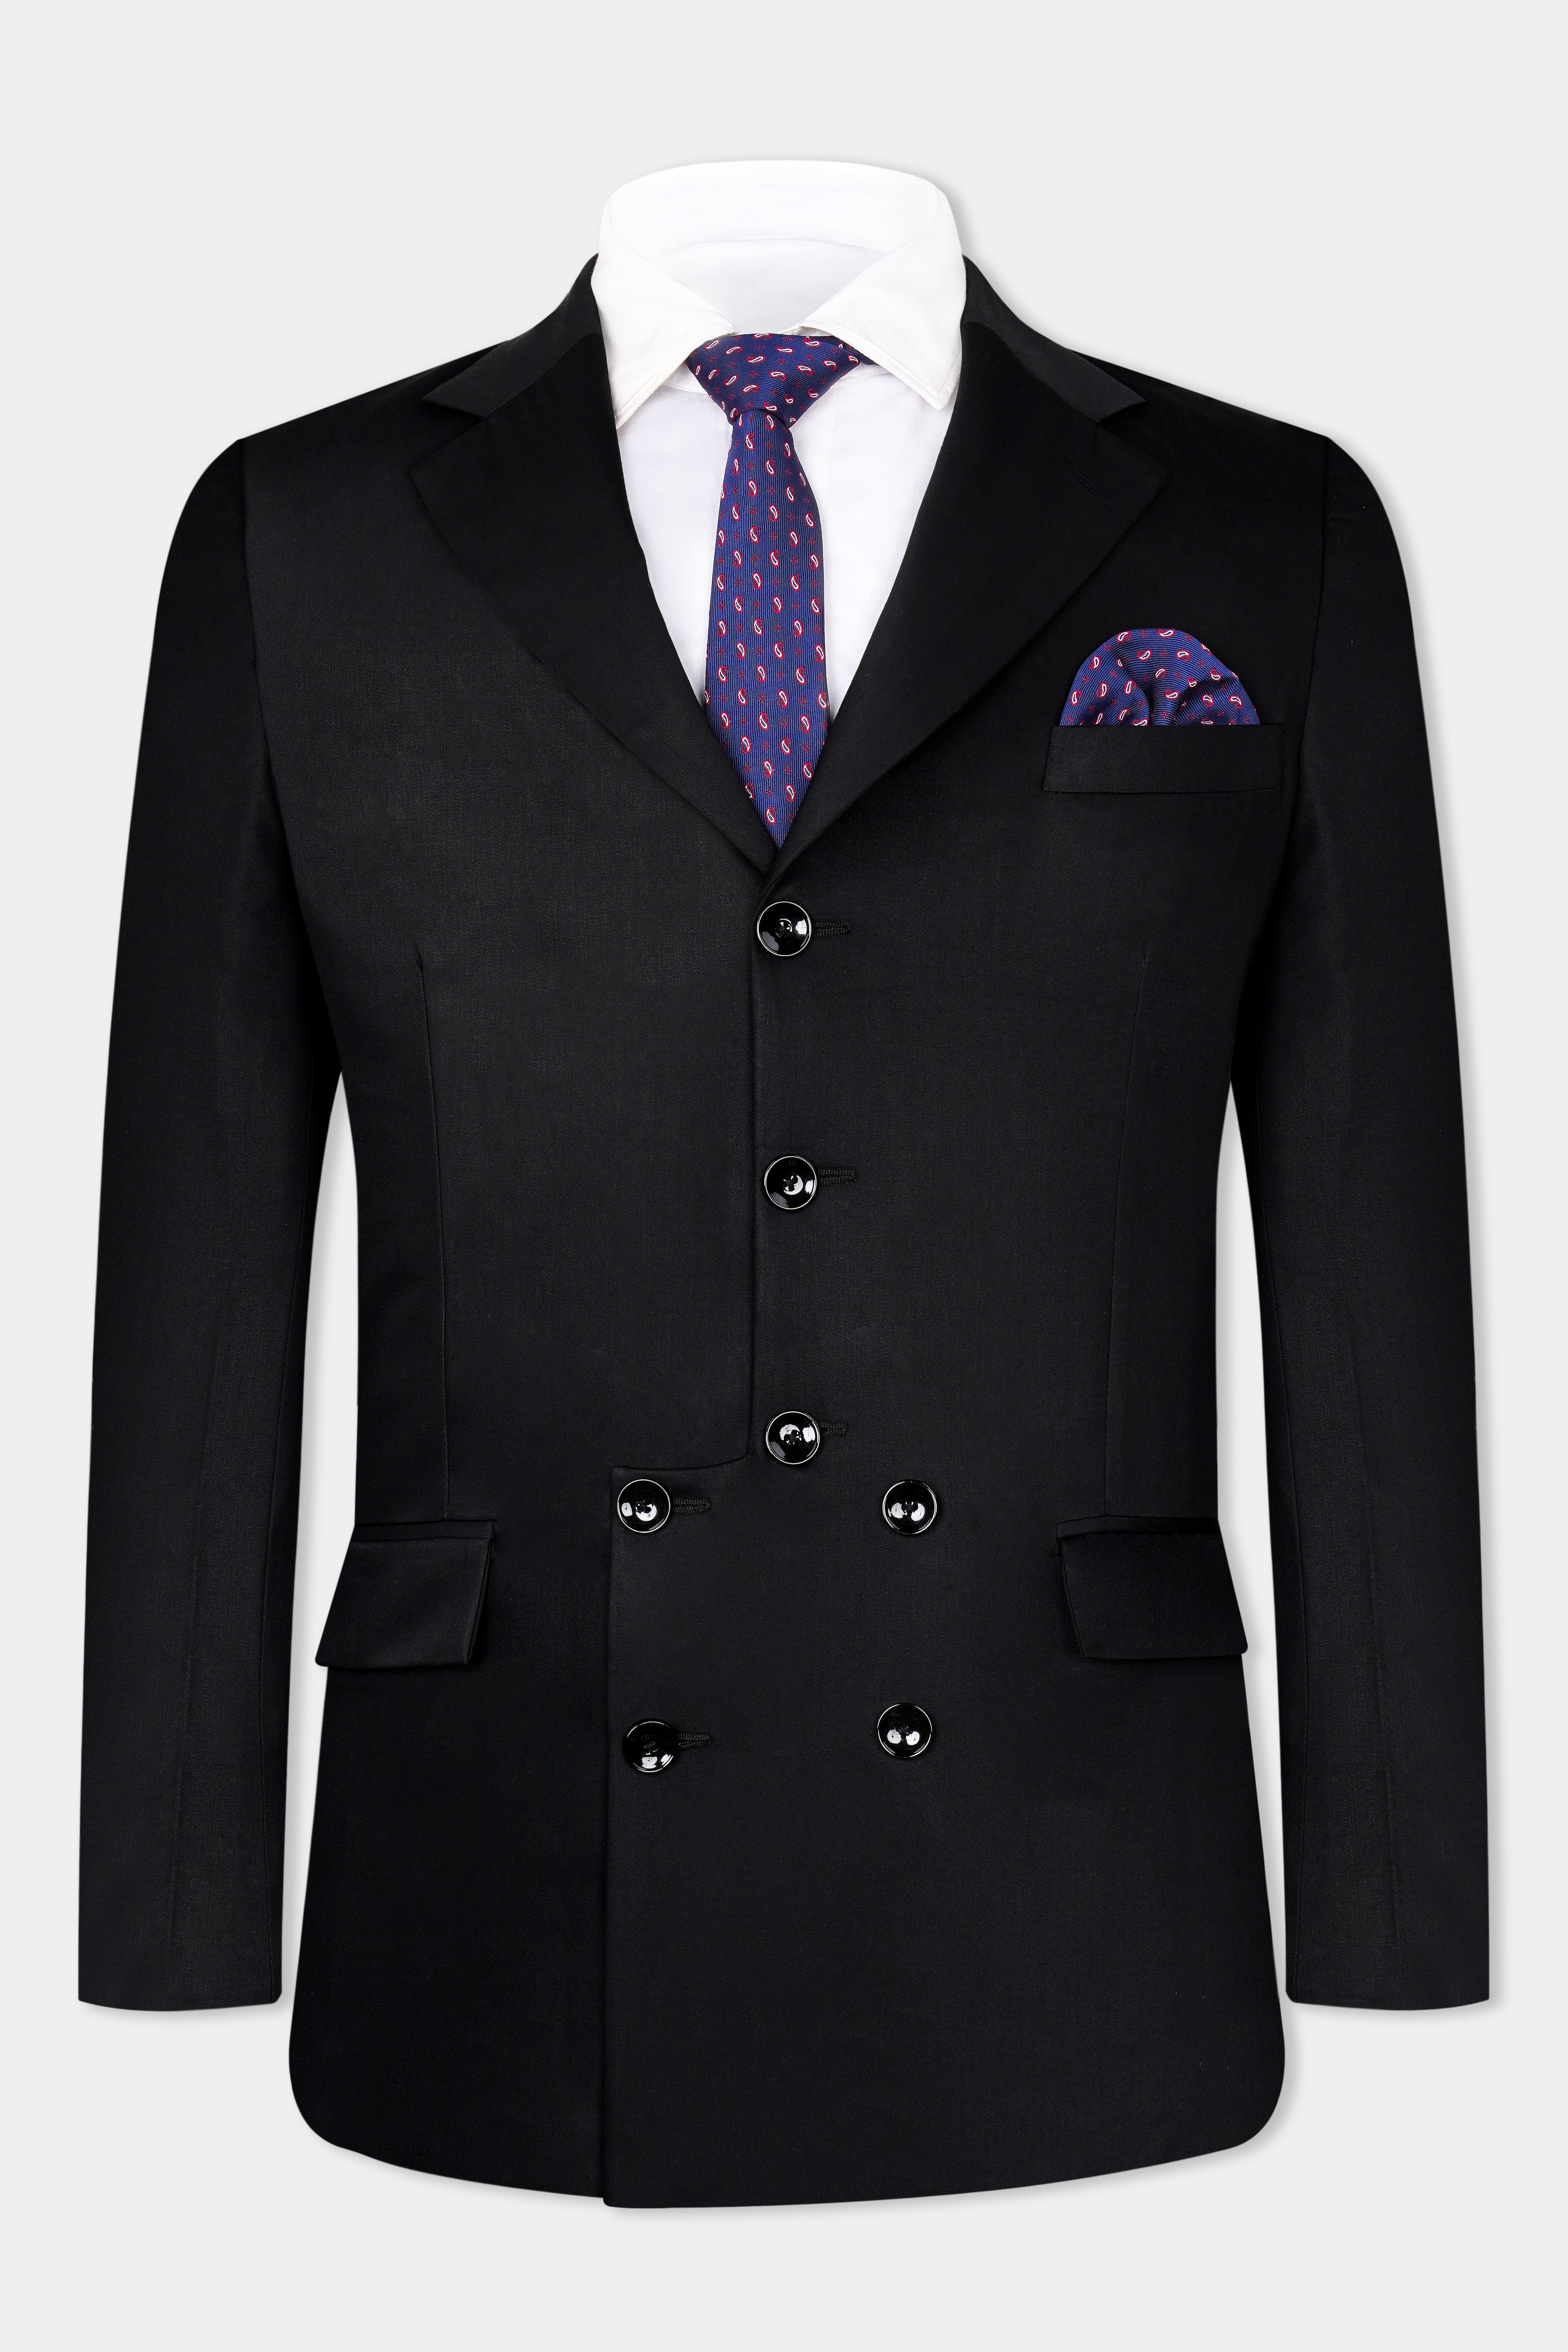 Jade Black Wool Rich Designer Suit ST3003-D188-36, ST3003-D188-38, ST3003-D188-40, ST3003-D188-42, ST3003-D188-44, ST3003-D188-46, ST3003-D188-48, ST3003-D188-50, ST3003-D188-52, ST3003-D188-54, ST3003-D188-56, ST3003-D188-58, ST3003-D188-60